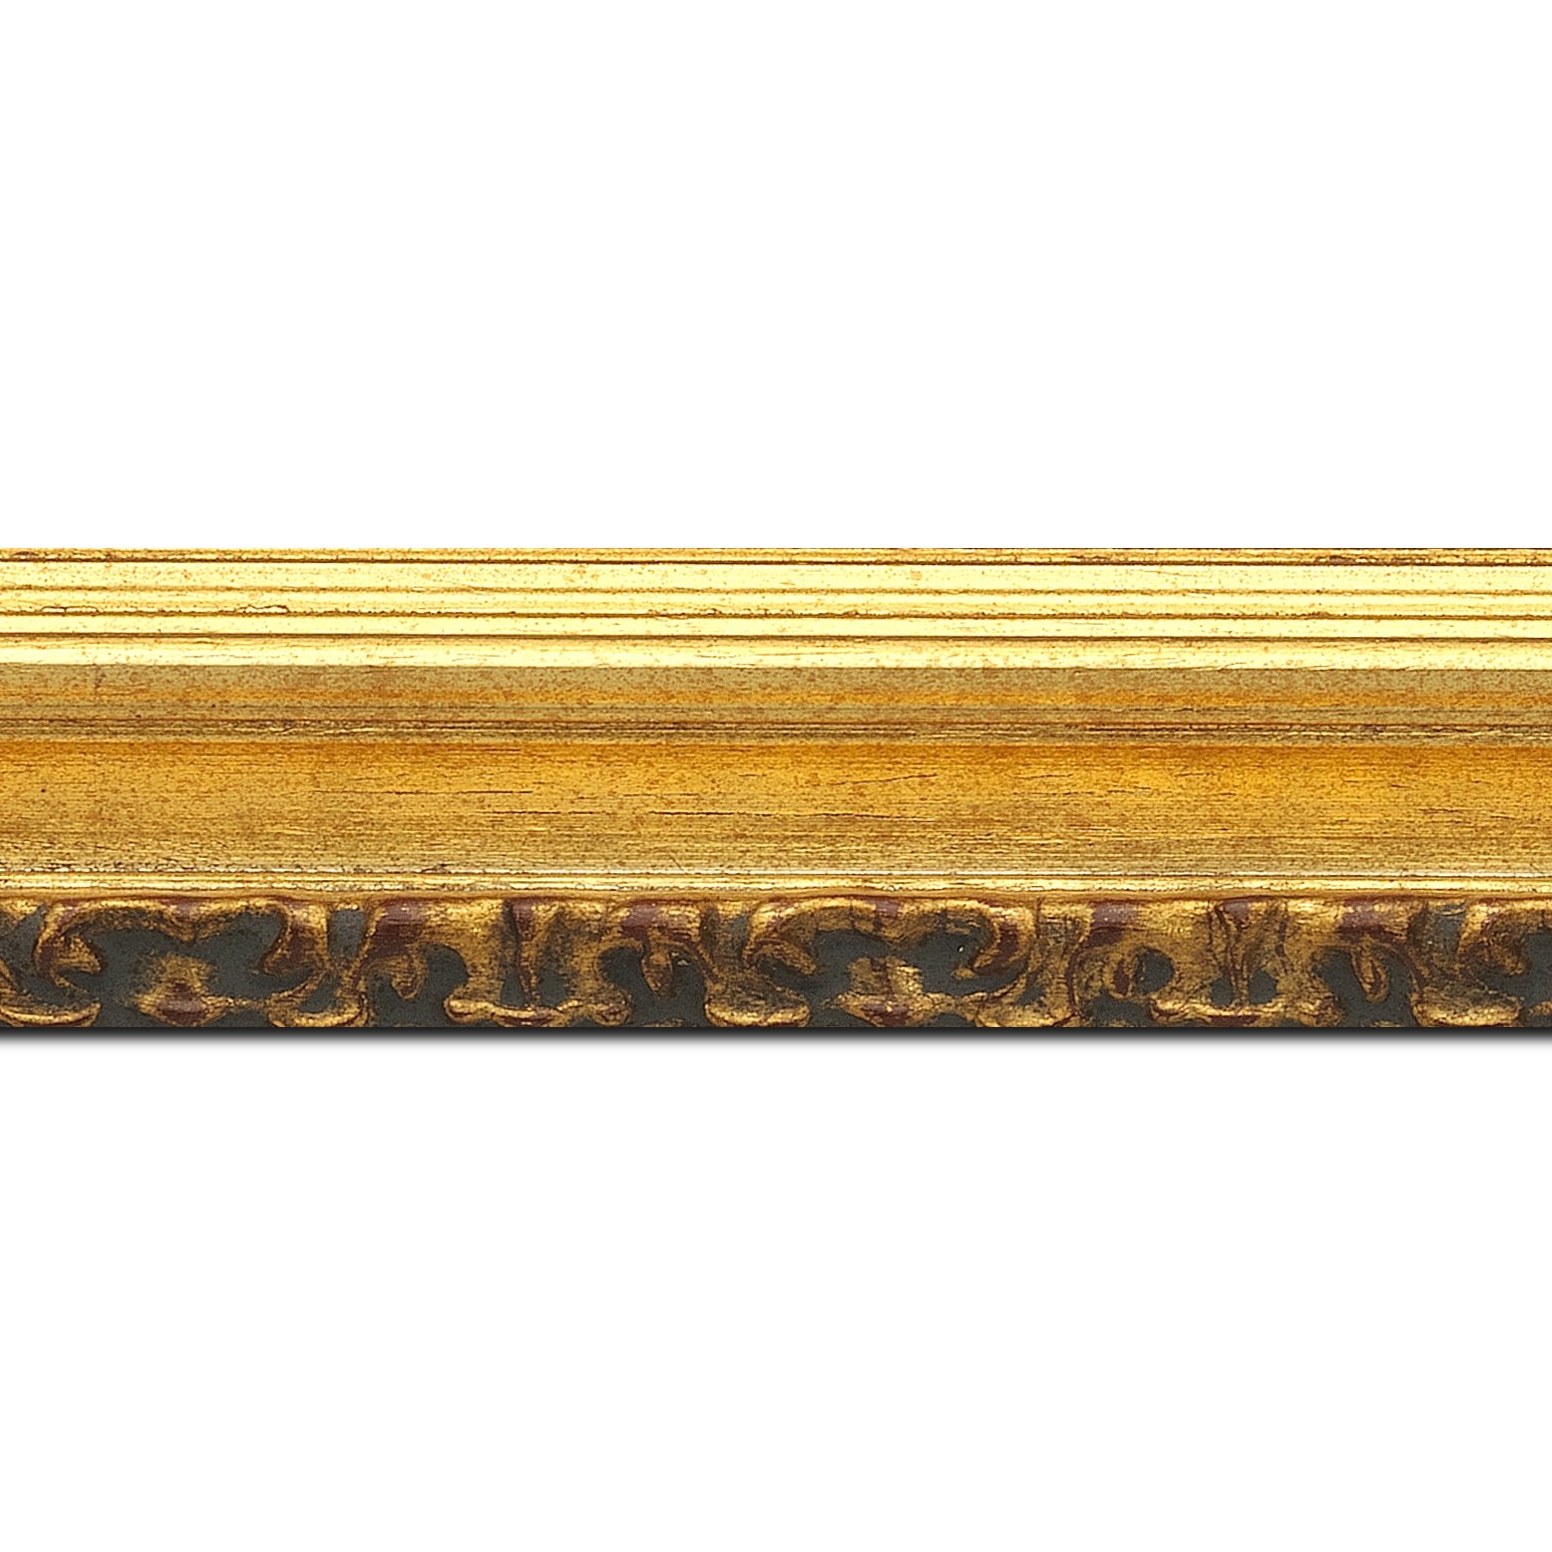 Baguette longueur 1.40m bois profil incurvé largeur 5.1cm couleur or patiné à la feuille gorge or nez ornement